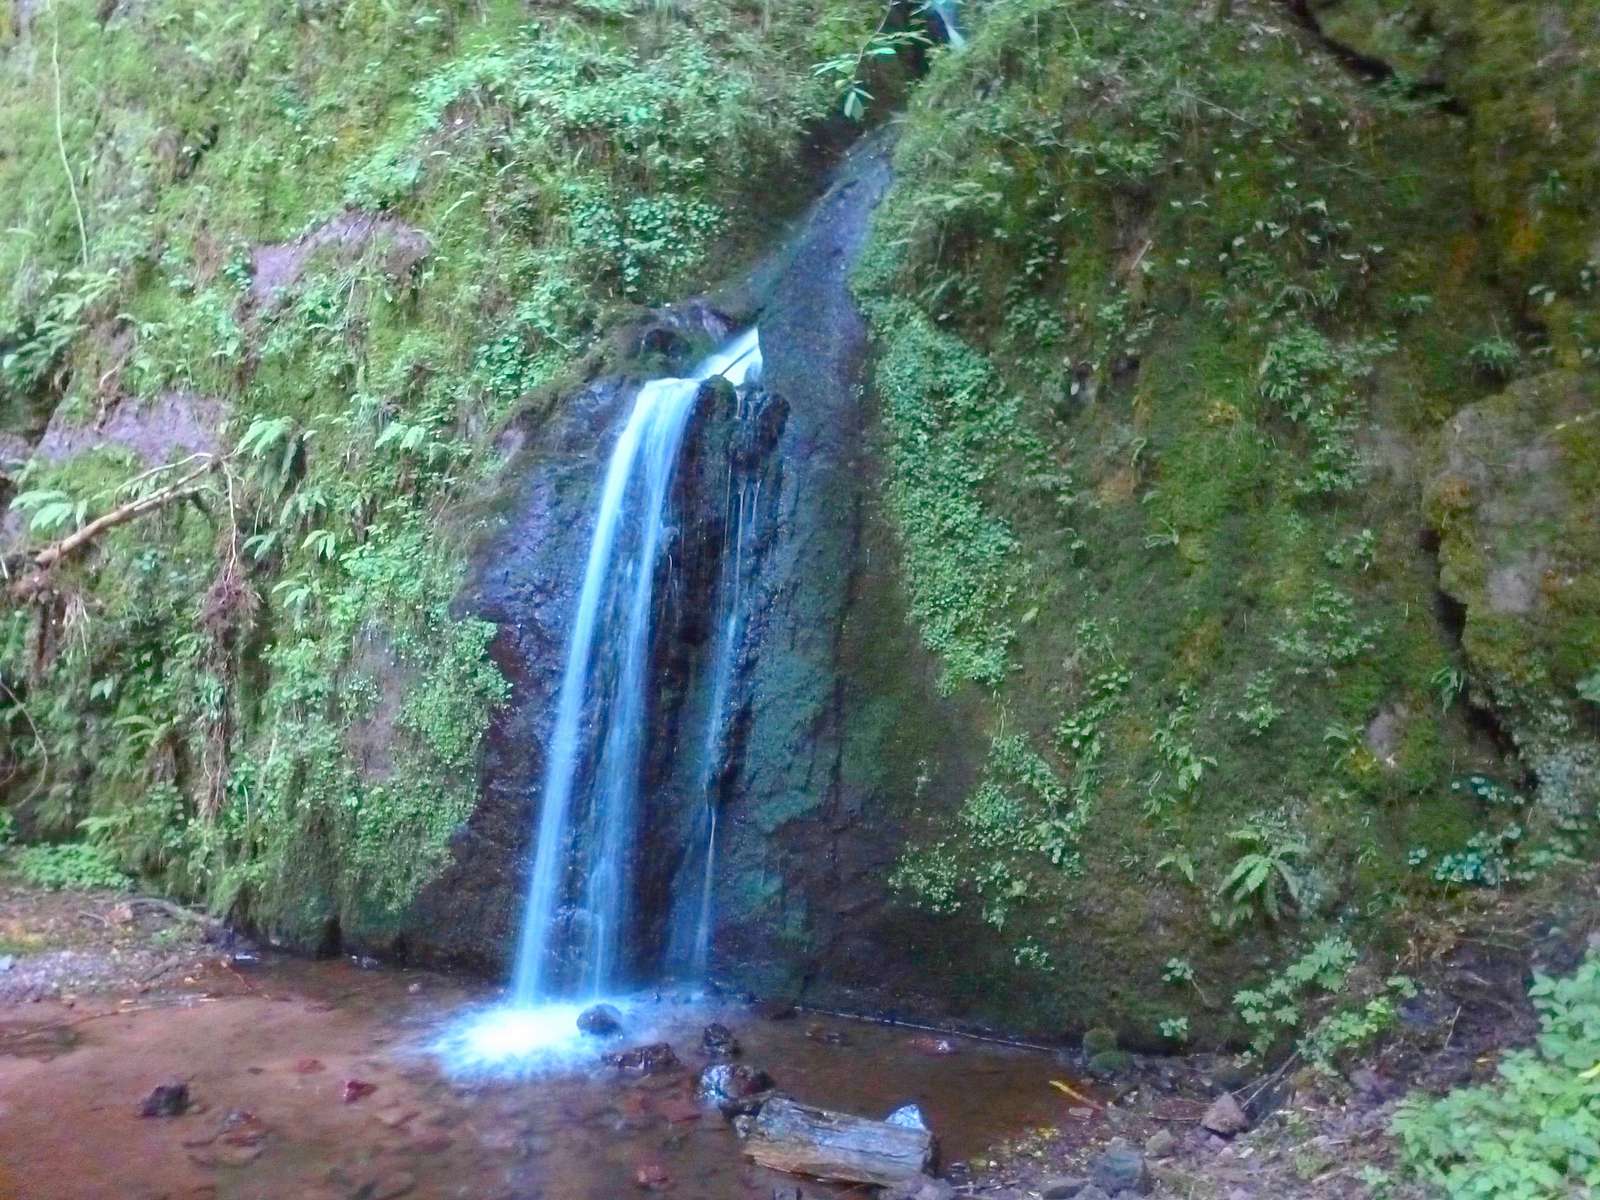 The Soultzbach waterfalls